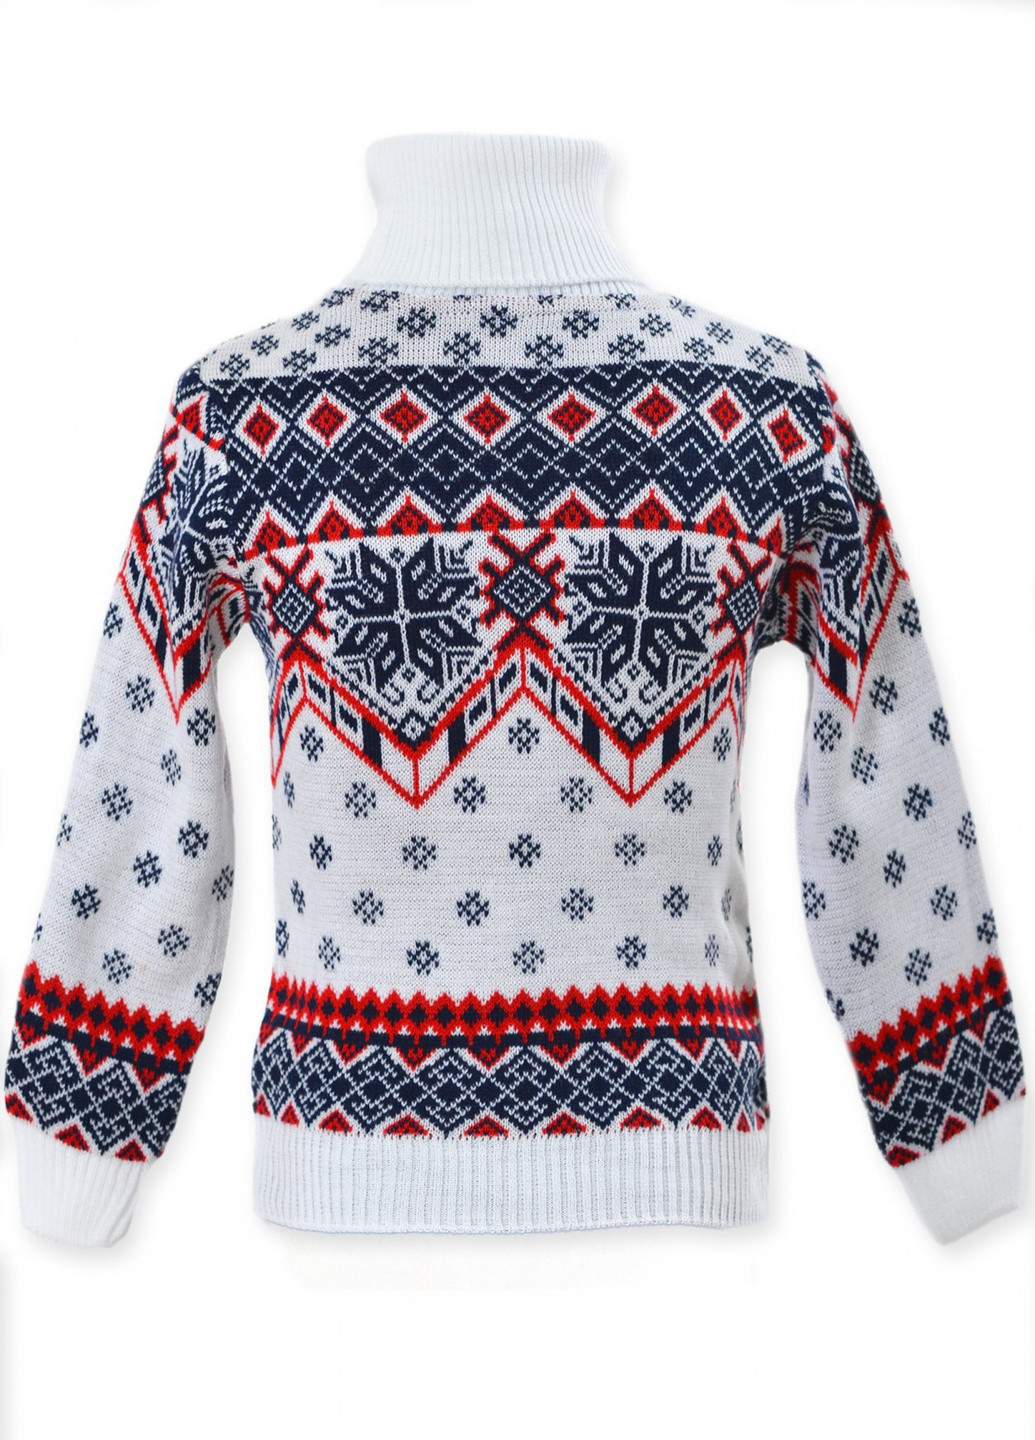 Червоний зимовий светри светр сніжинки (снежинки)17207-706 Lemanta